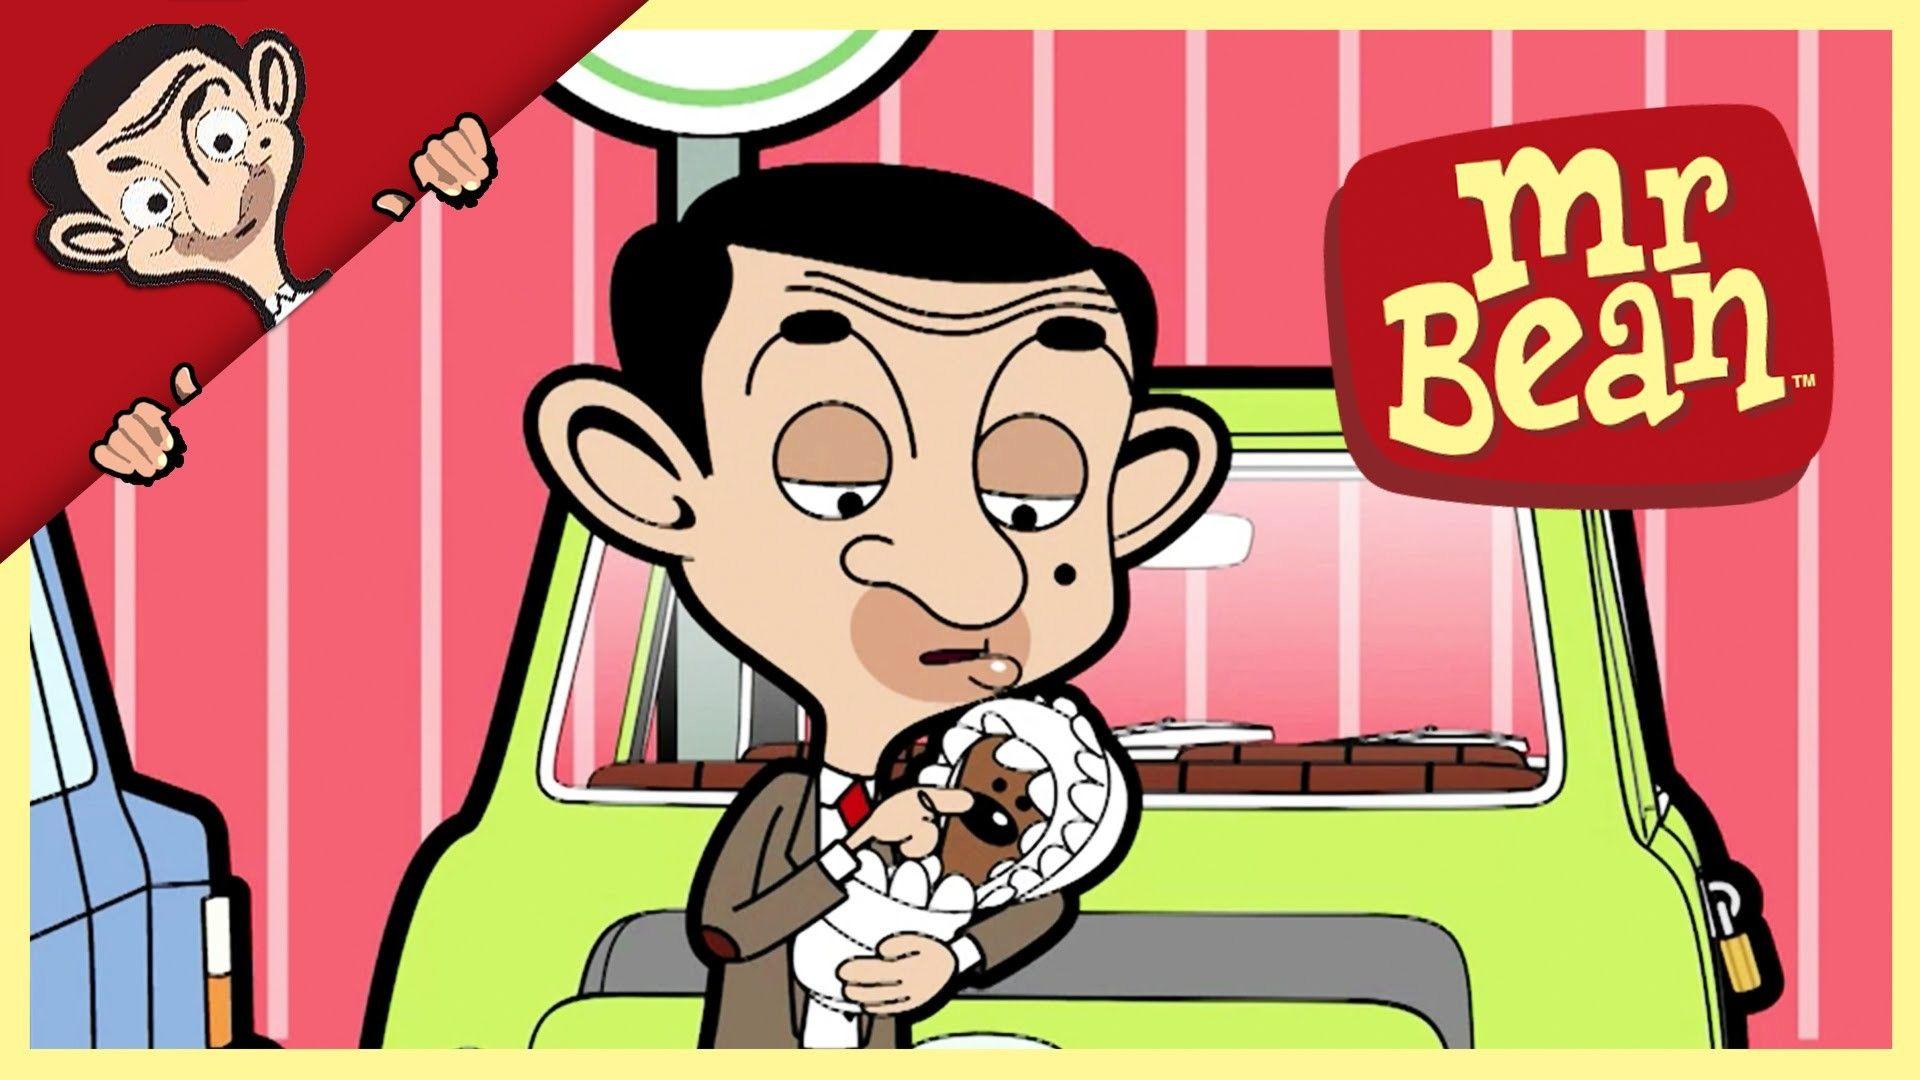 Mr Bean Cartoon Wallpapers Top Free Mr Bean Cartoon Backgrounds Wallpaperaccess